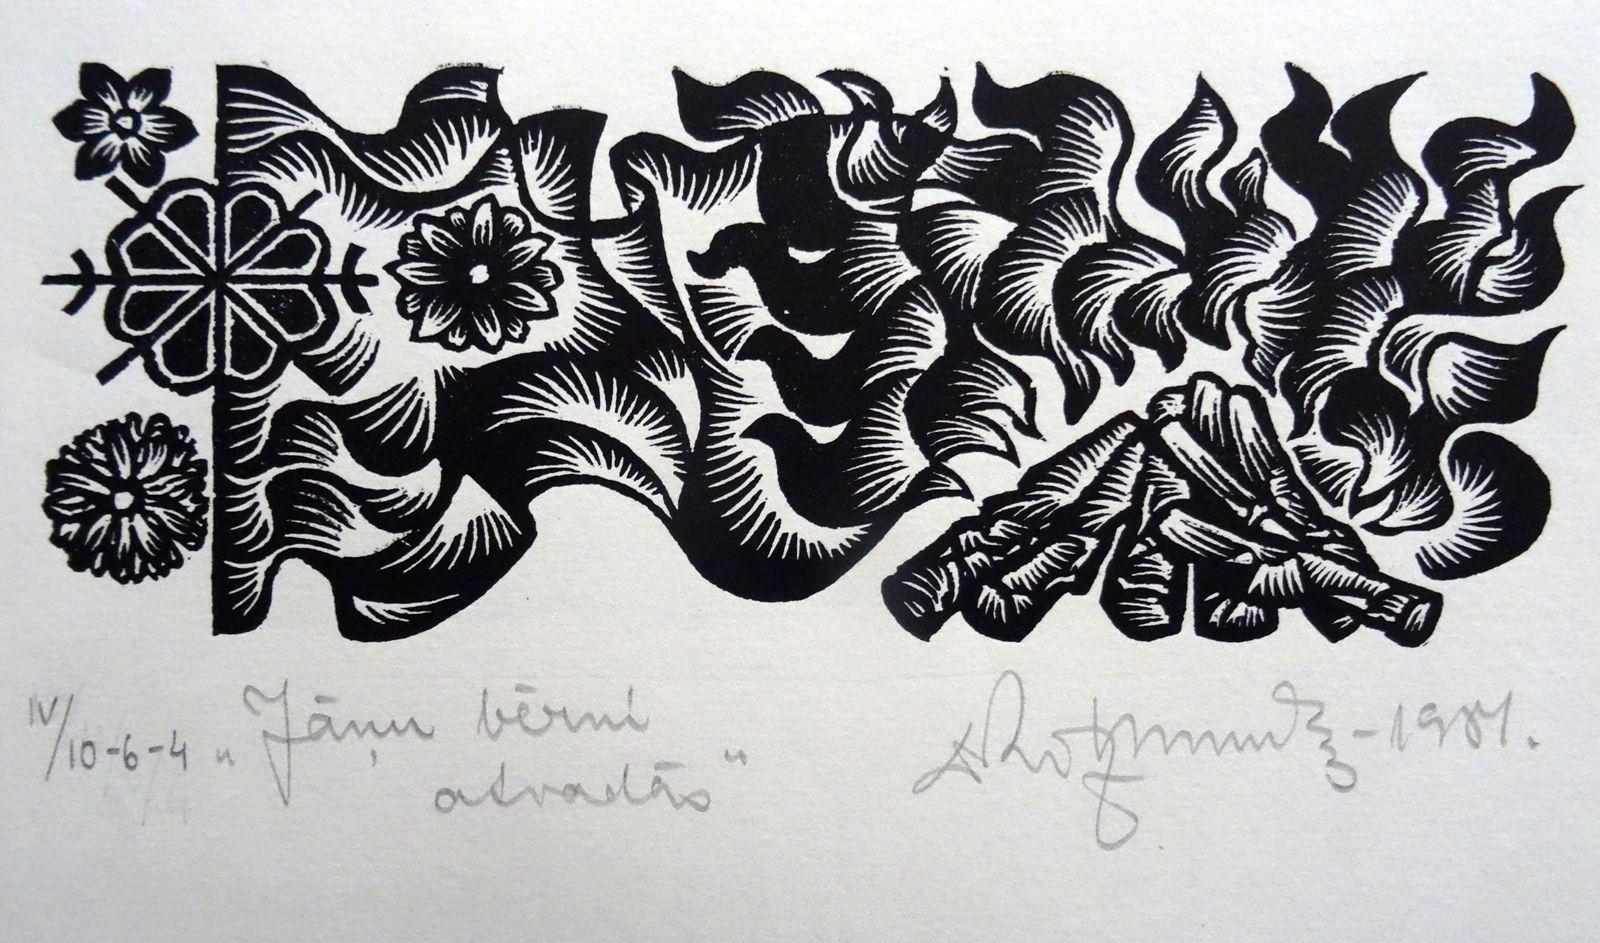 Les enfants du solstice. 1984. Papier, linogravure, 20 x 34 cm